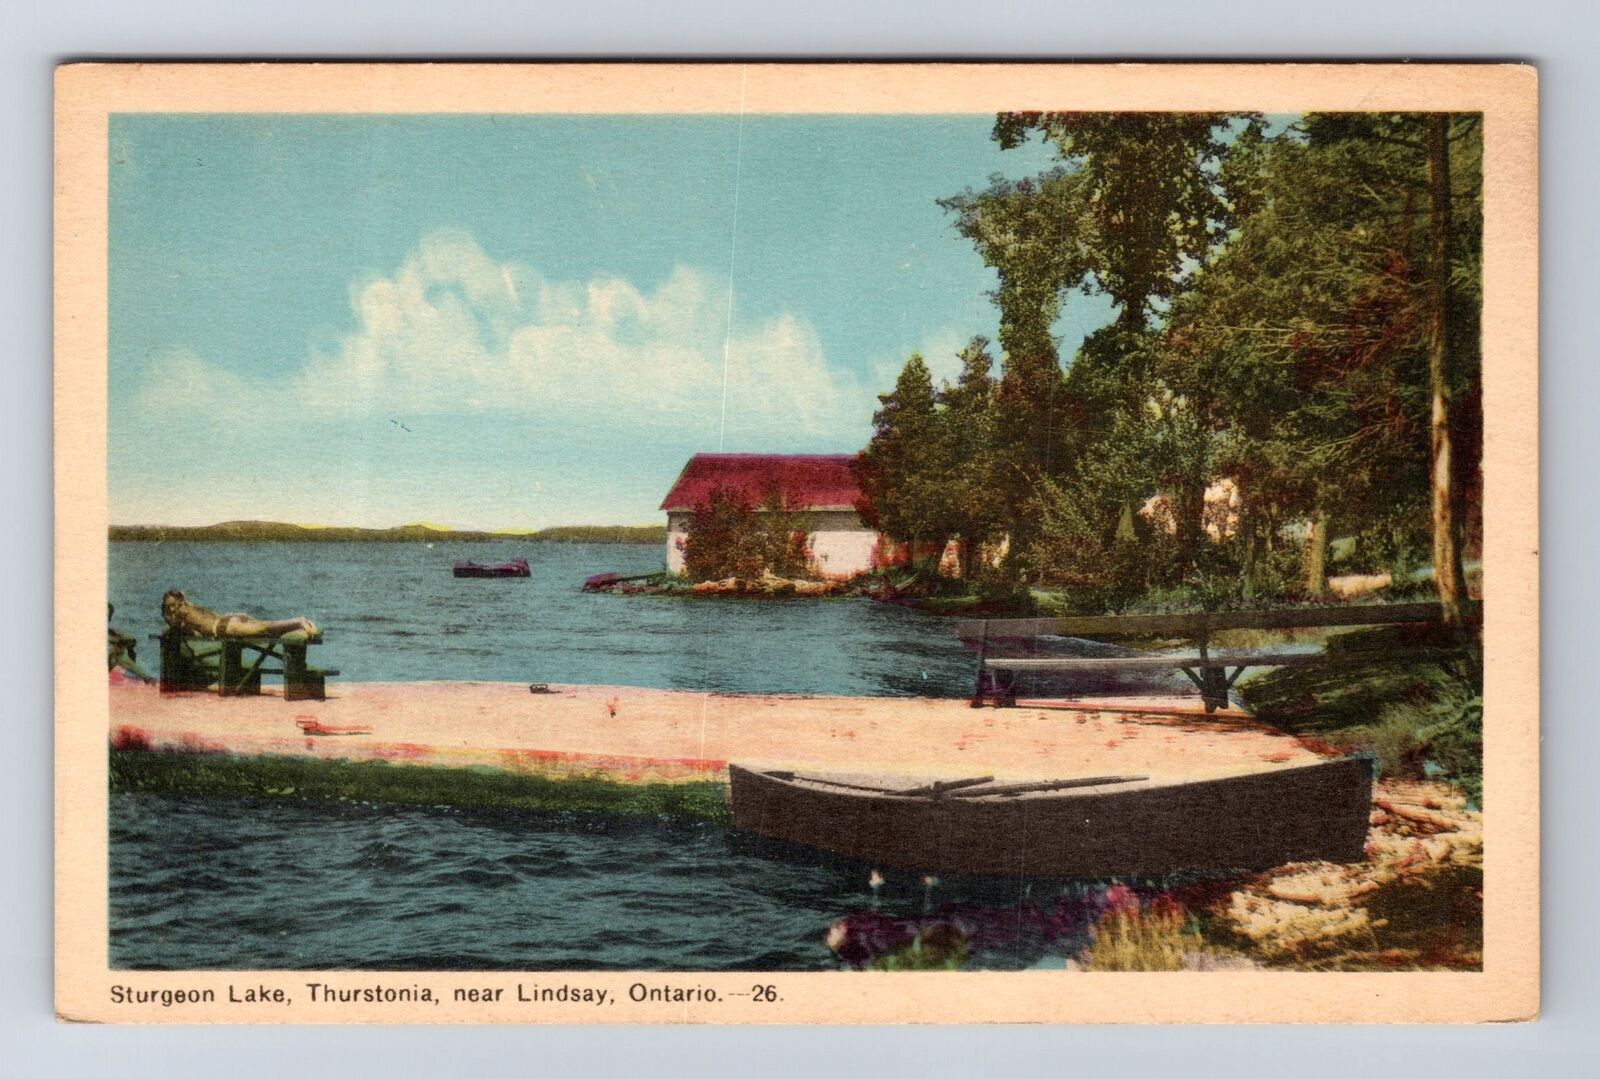 Lindsay ON-Ontario Canada, Sturgeon Lake, Thurstonia, Vintage Postcard